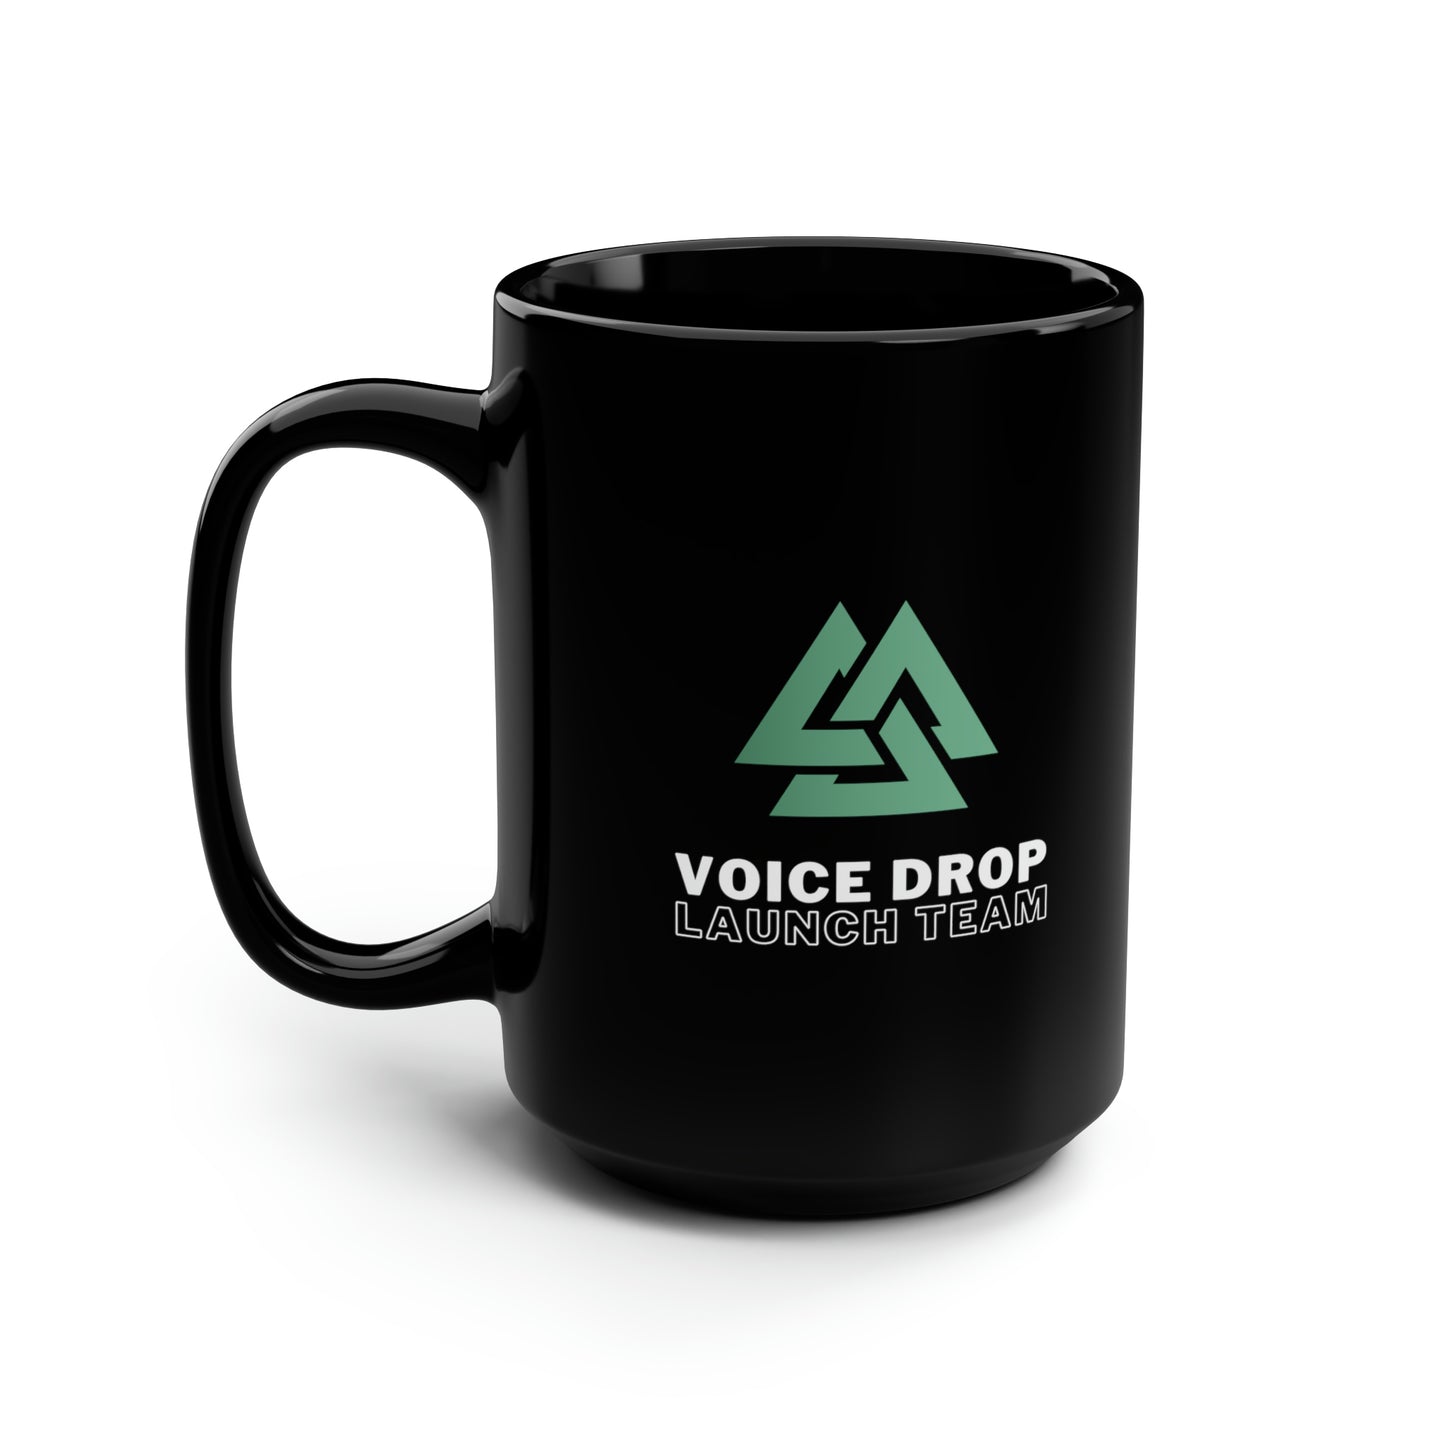 Voice Drop Launch team